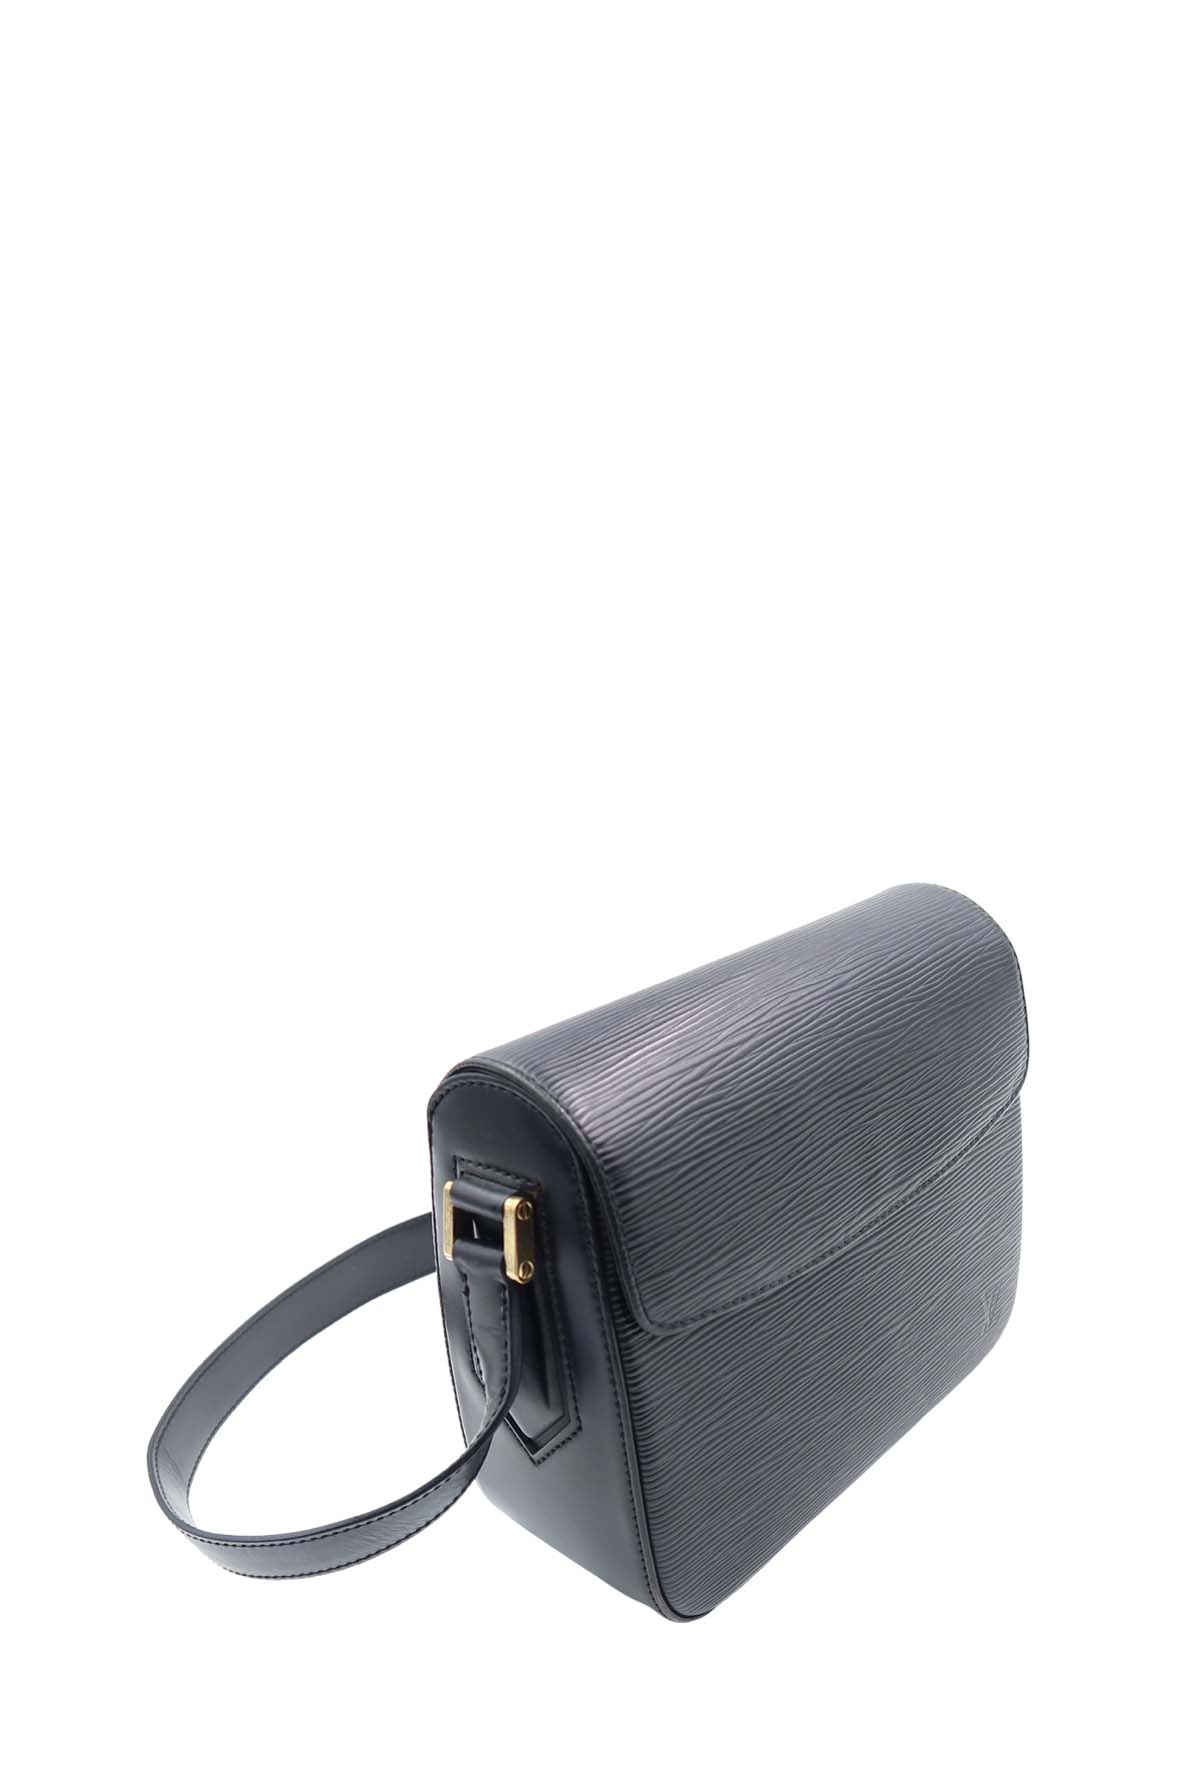 Louis Vuitton M52209 Vintage Black Epi Leather Buci shoulder Bag (SP0090) -  The Attic Place